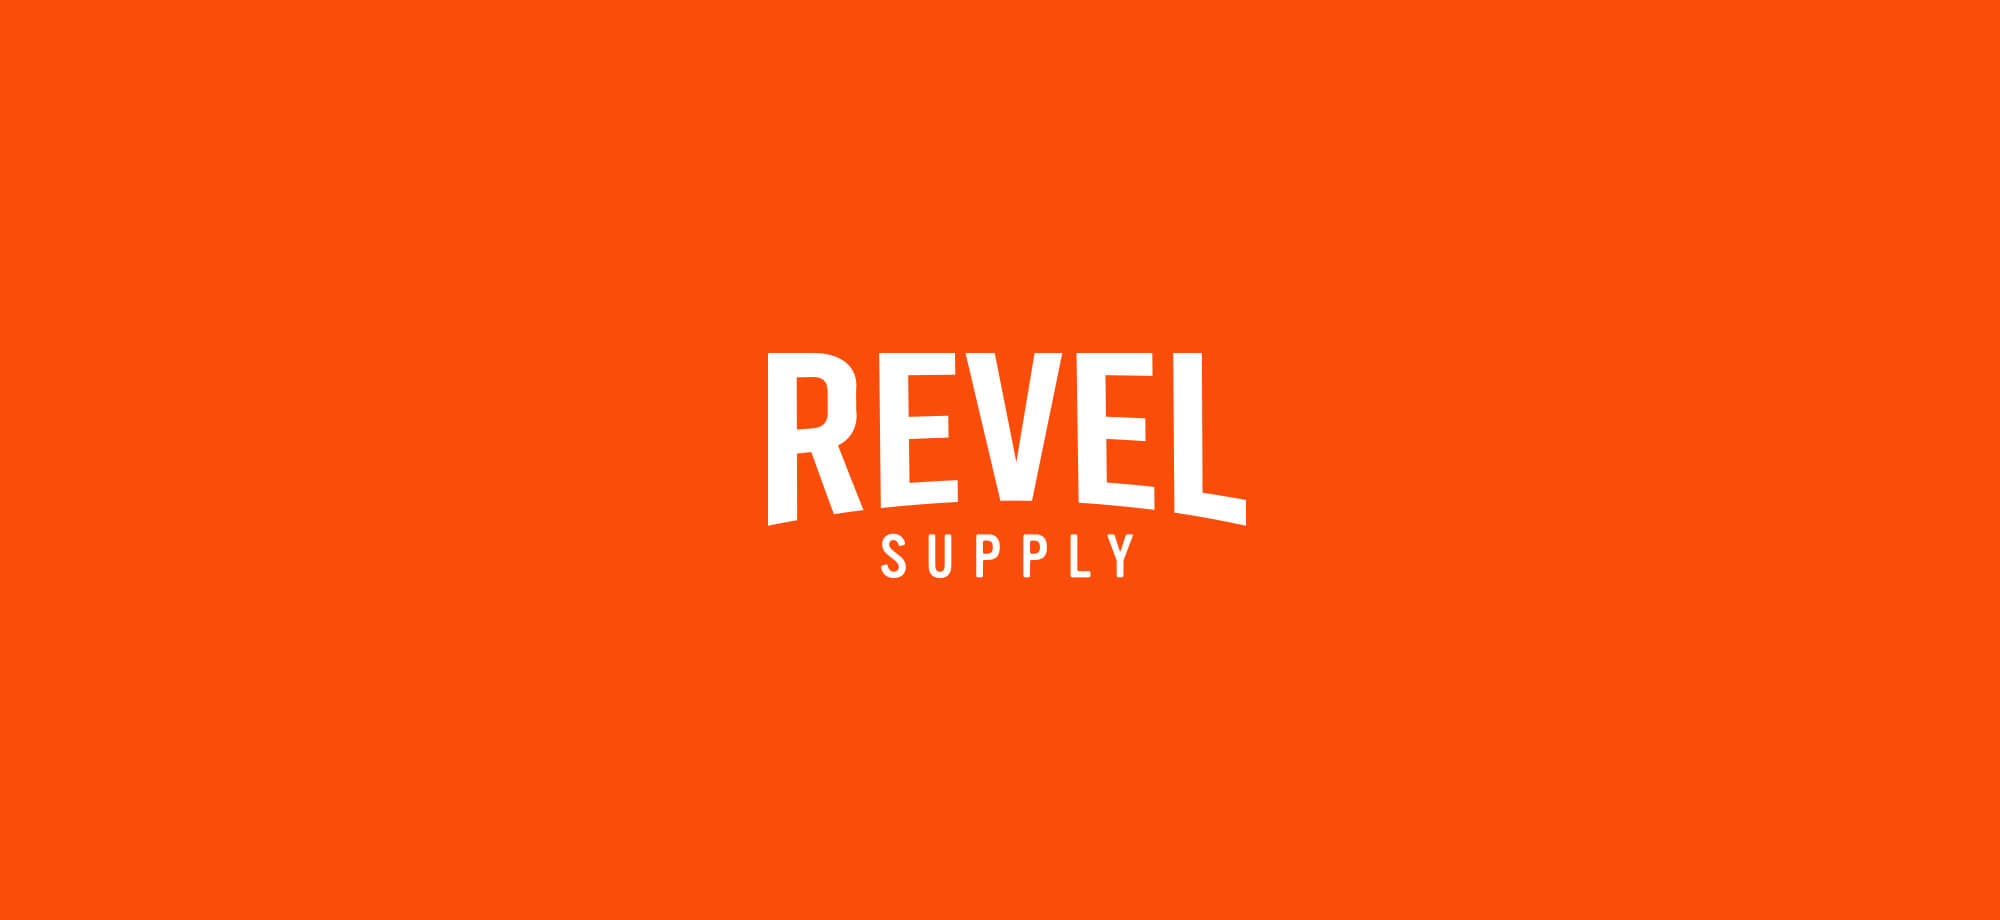 Revel Supply word mark